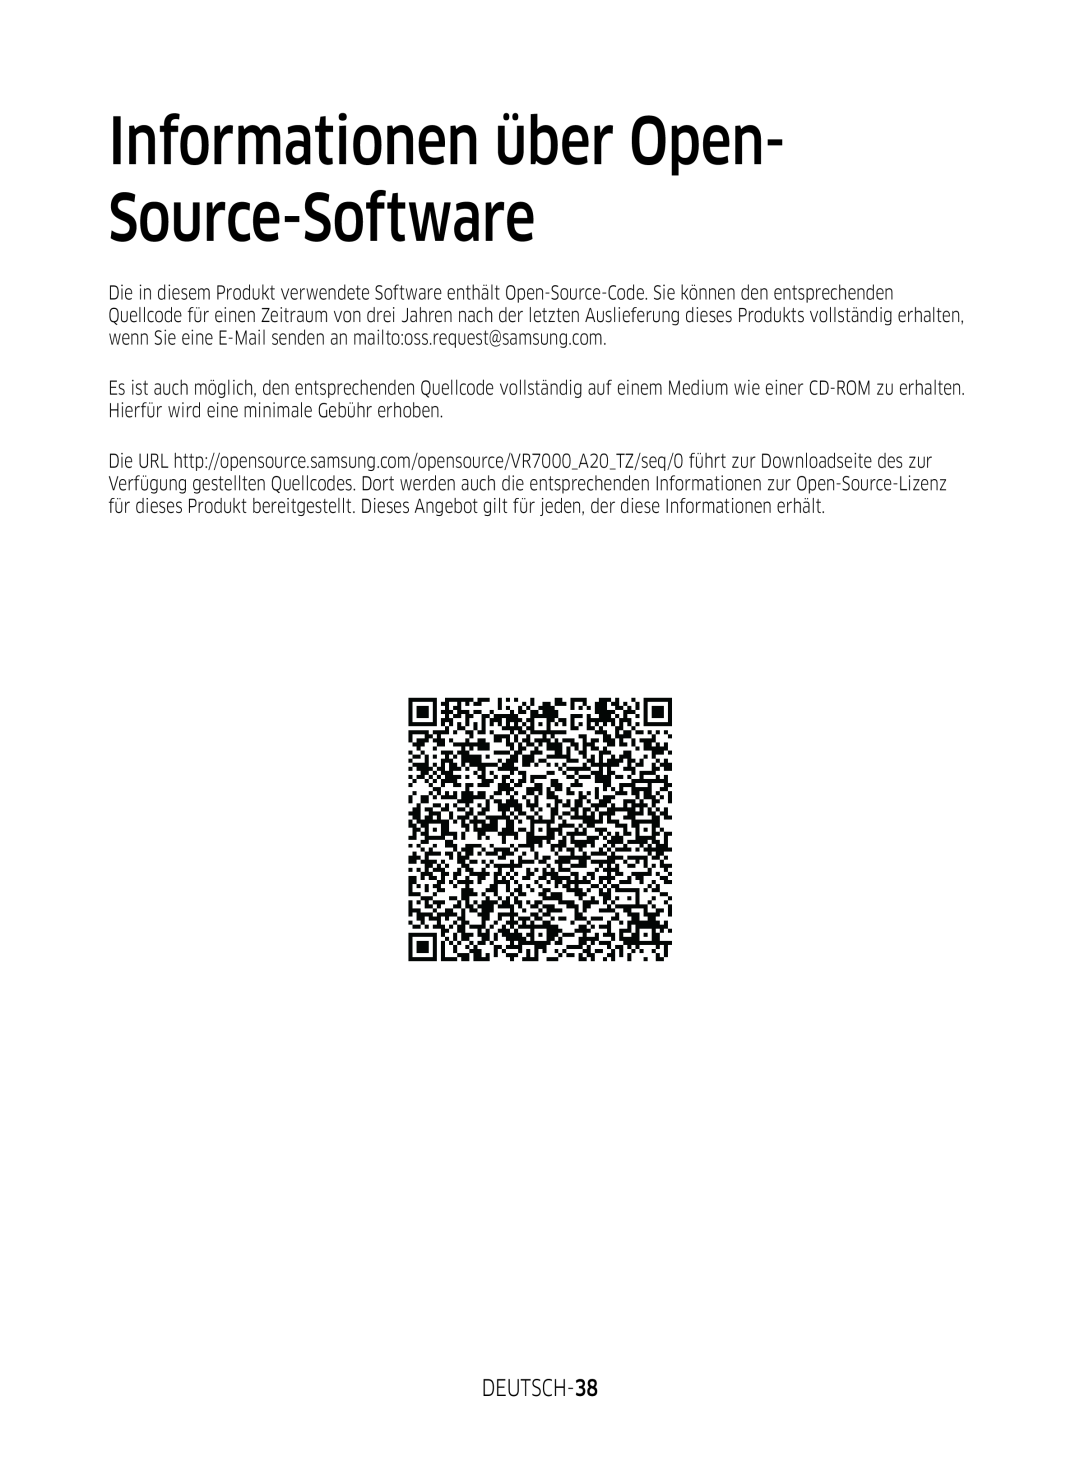 Samsung VR2DM7060WD/EG, VR1DM7020UH/EG, VR2GM7050UU/EG, VR1GM7030WW/EG Informationen über Open- Source-Software, DEUTSCH-38 